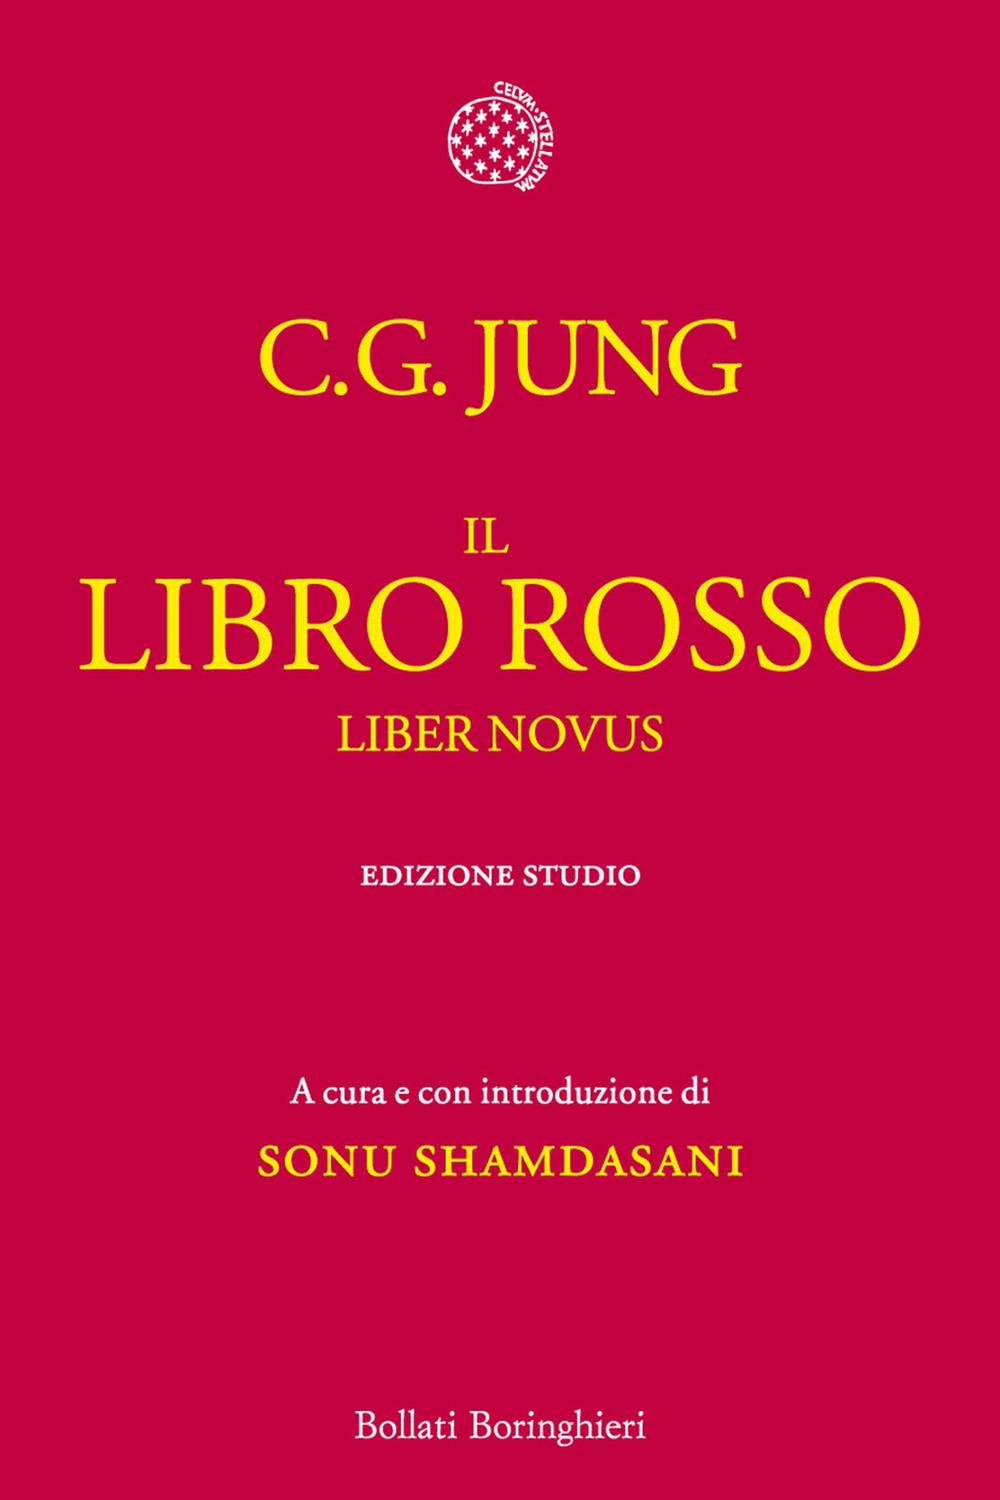 Il Libro rosso - Carl Gustav Jung